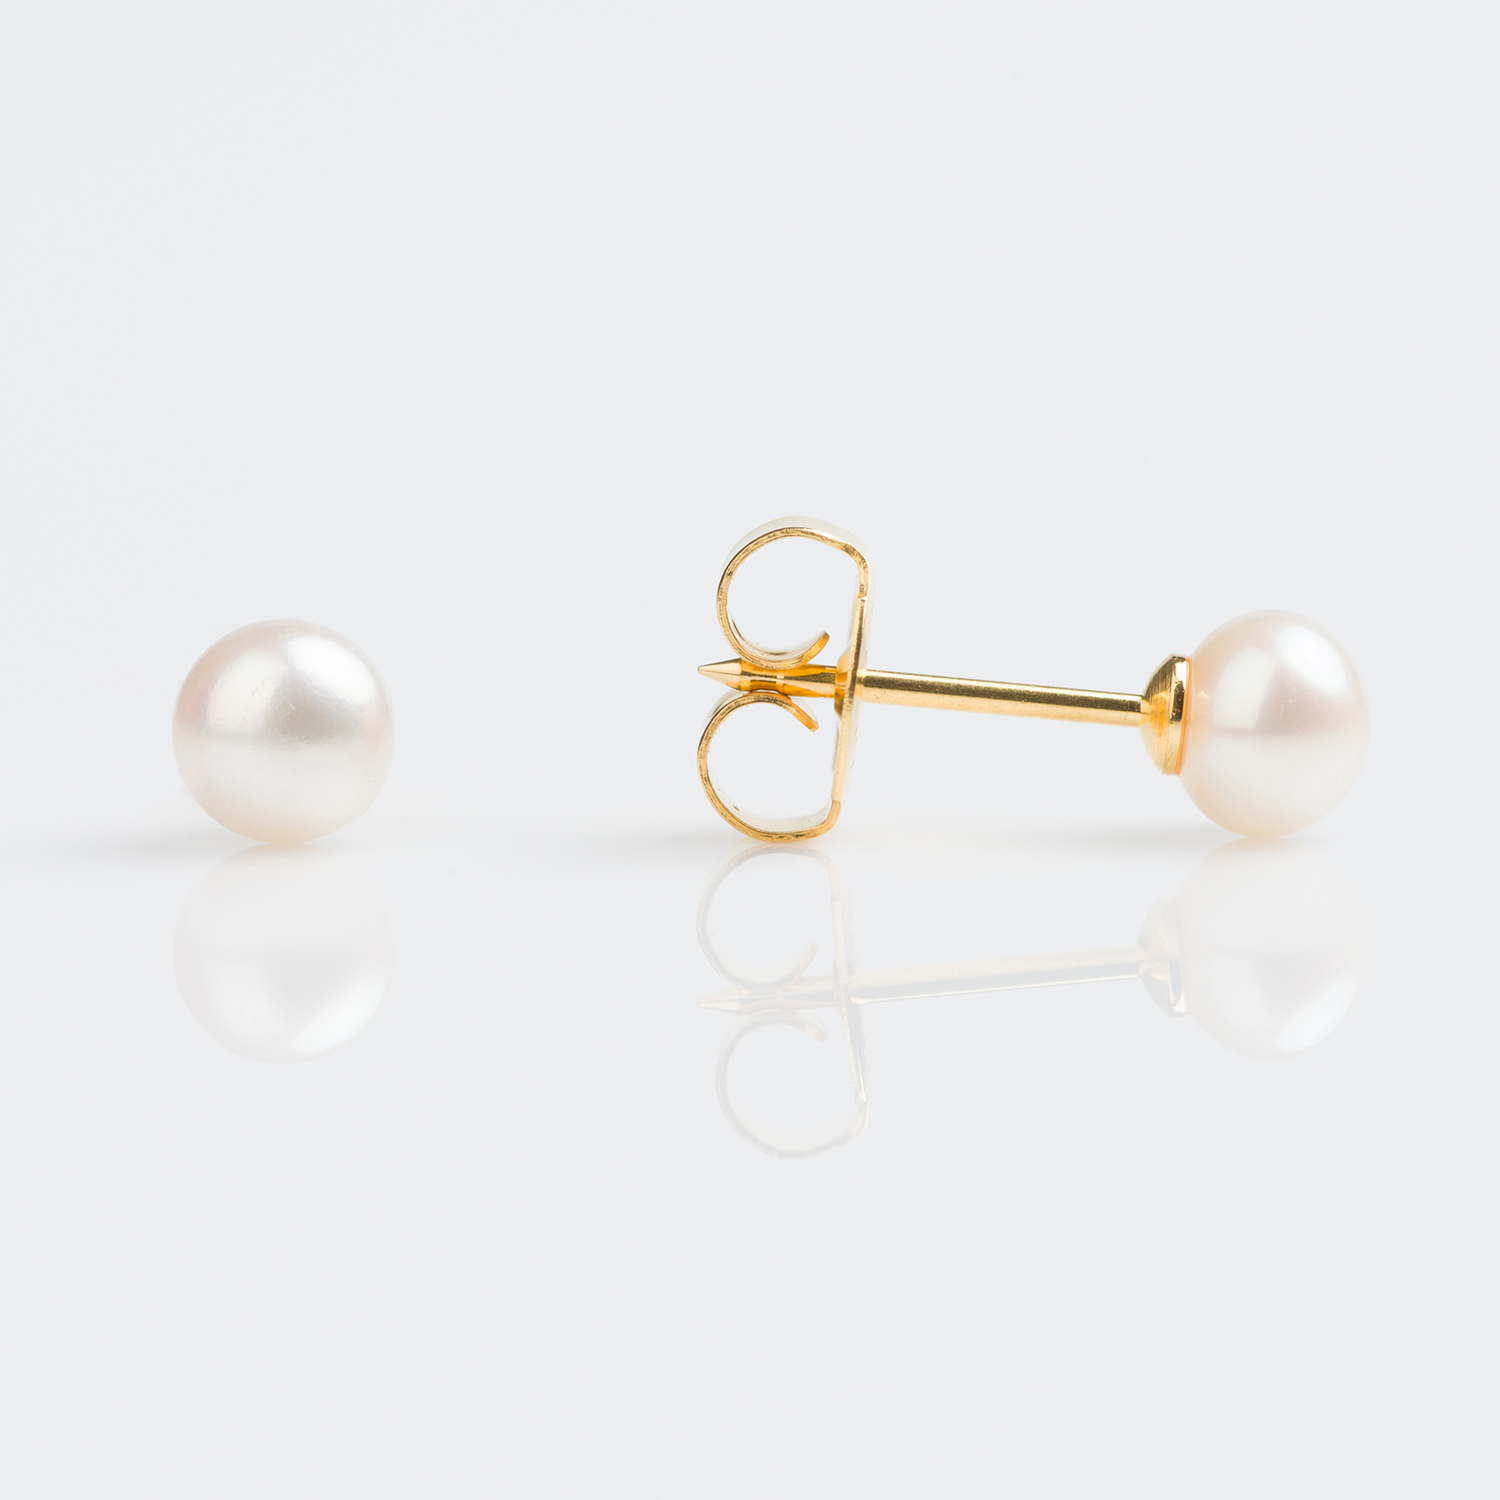 7518-0235 – Studex Gold 5mm Pearl Piercing Earrings